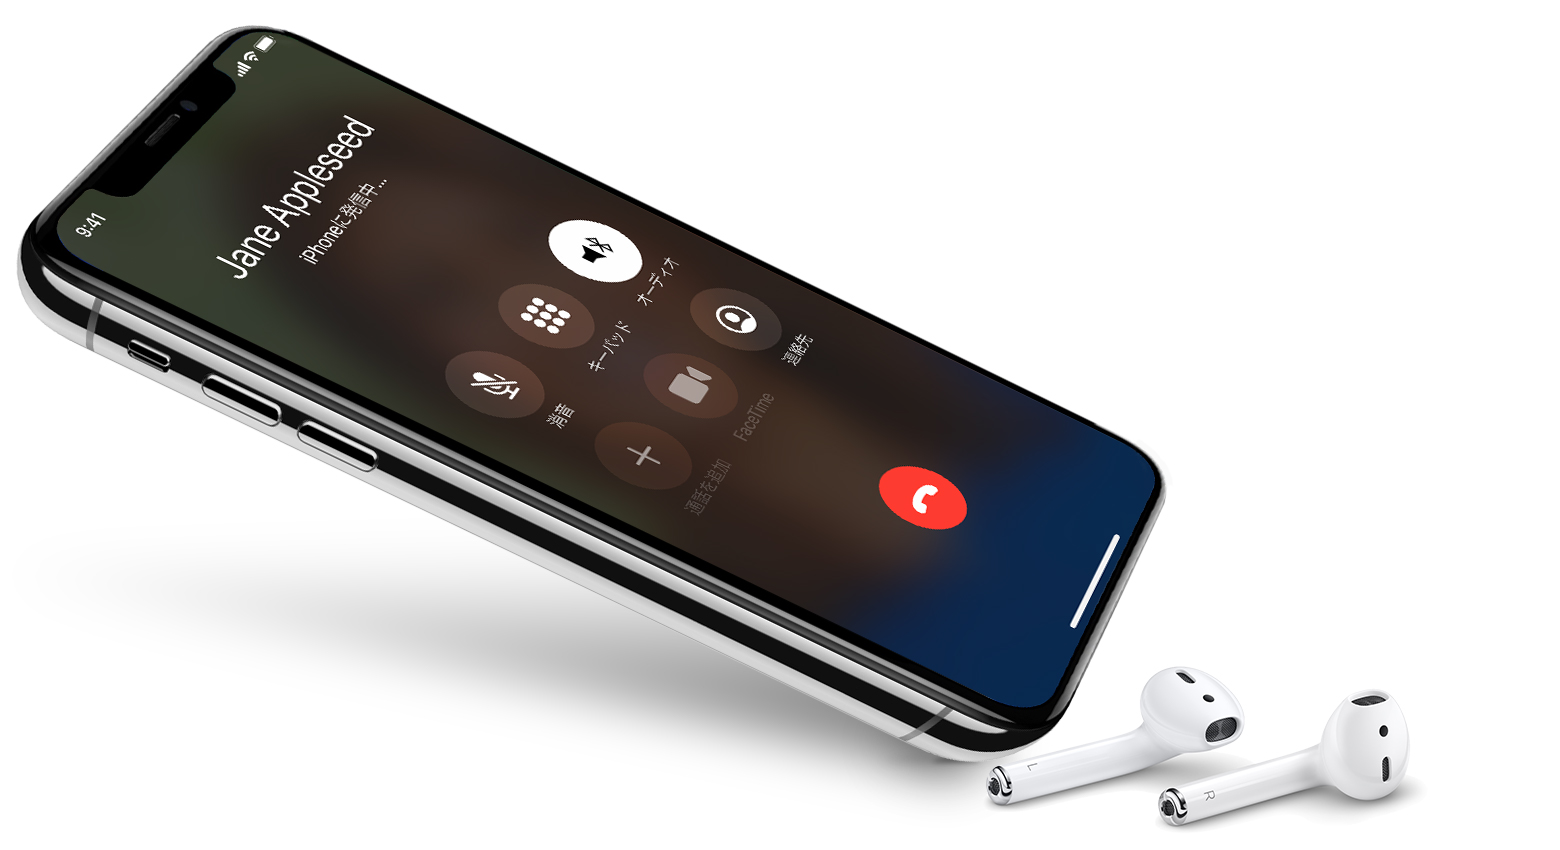 Wi Fi 通話機能で電話をかける Apple サポート